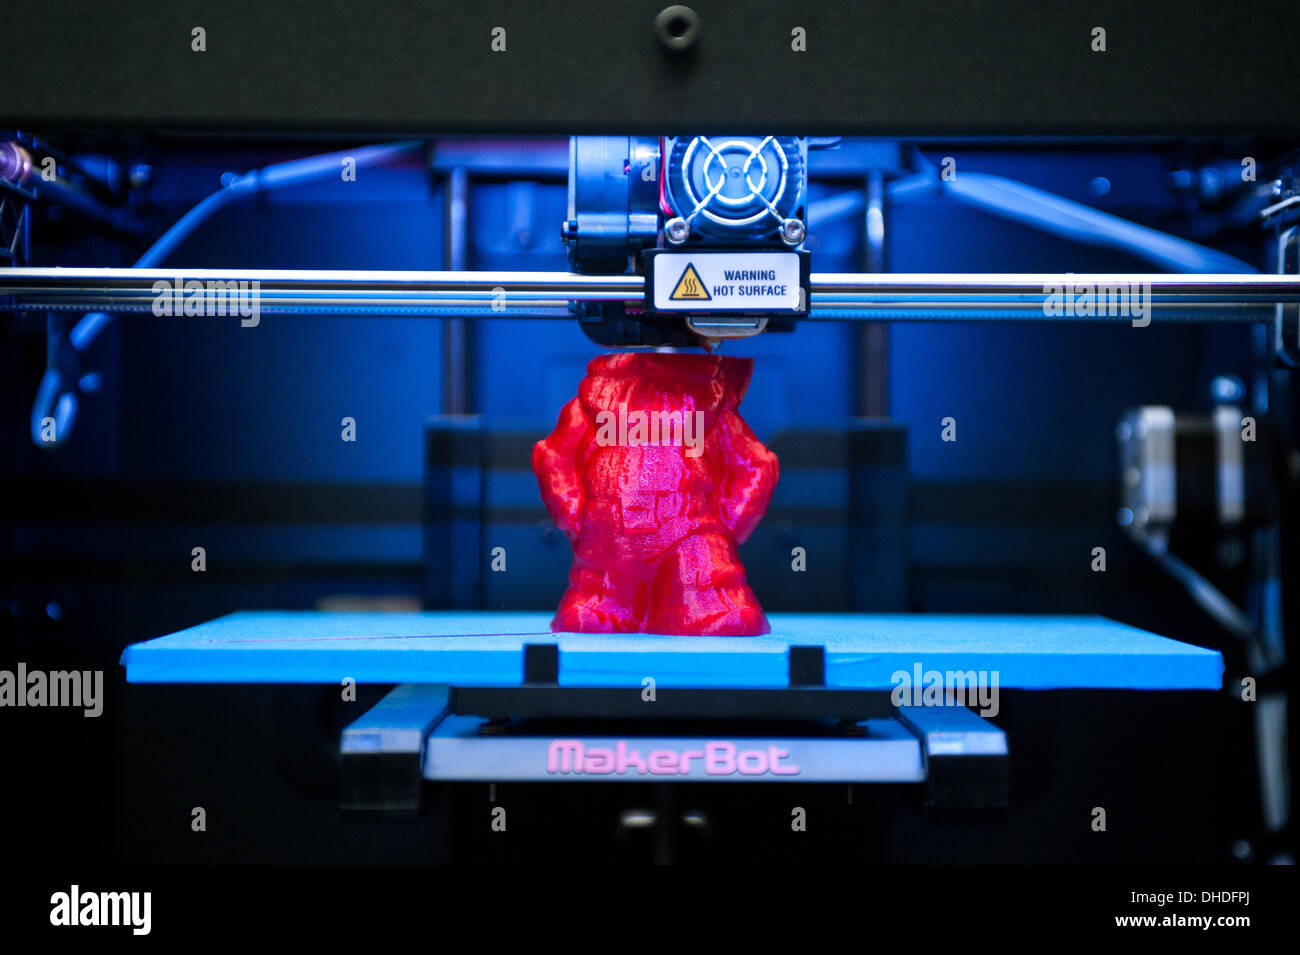 Londra, Regno Unito. Il 7 novembre 2013. Un MakerBot Replicator 2 stampante 3D la stampa di un colore rosso è gnome sul display in 3D Printshow al Business Design Centre di Londra. La mostra riunisce i più grandi nomi in 3D della tecnologia di stampa a fianco dei più creativi, entusiasmanti e innovativi di individui che utilizzano processi additivi oggi. Credito: Piero Cruciatti/Alamy Live News Foto Stock